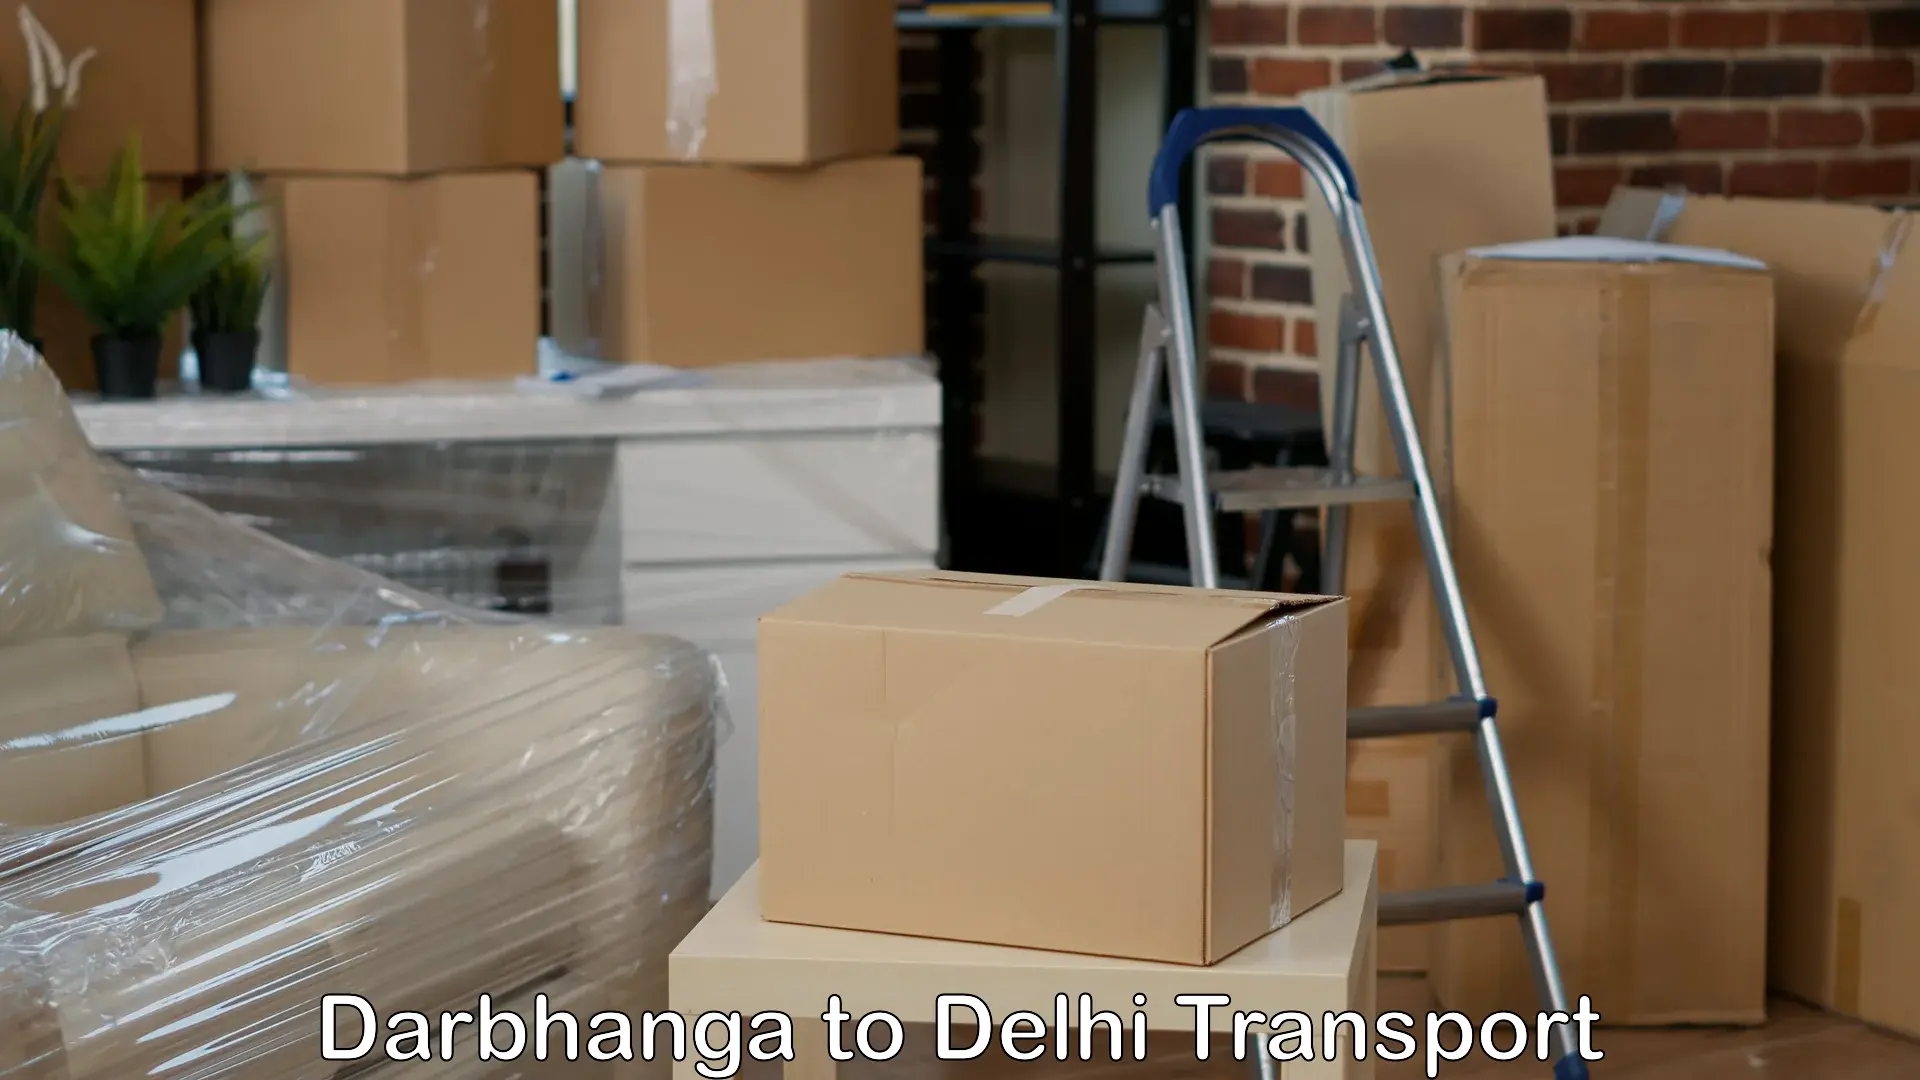 Bike transport service Darbhanga to Indraprastha